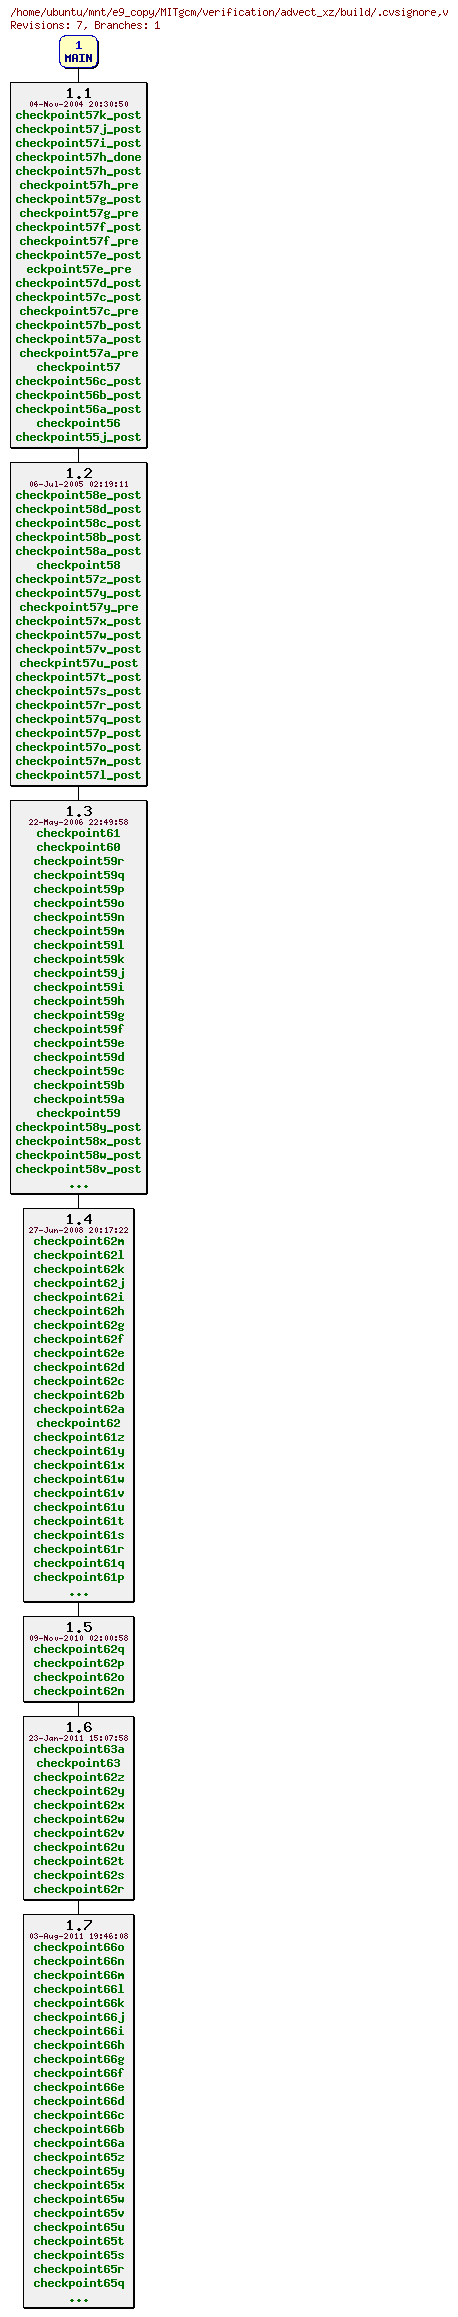 Revisions of MITgcm/verification/advect_xz/build/.cvsignore